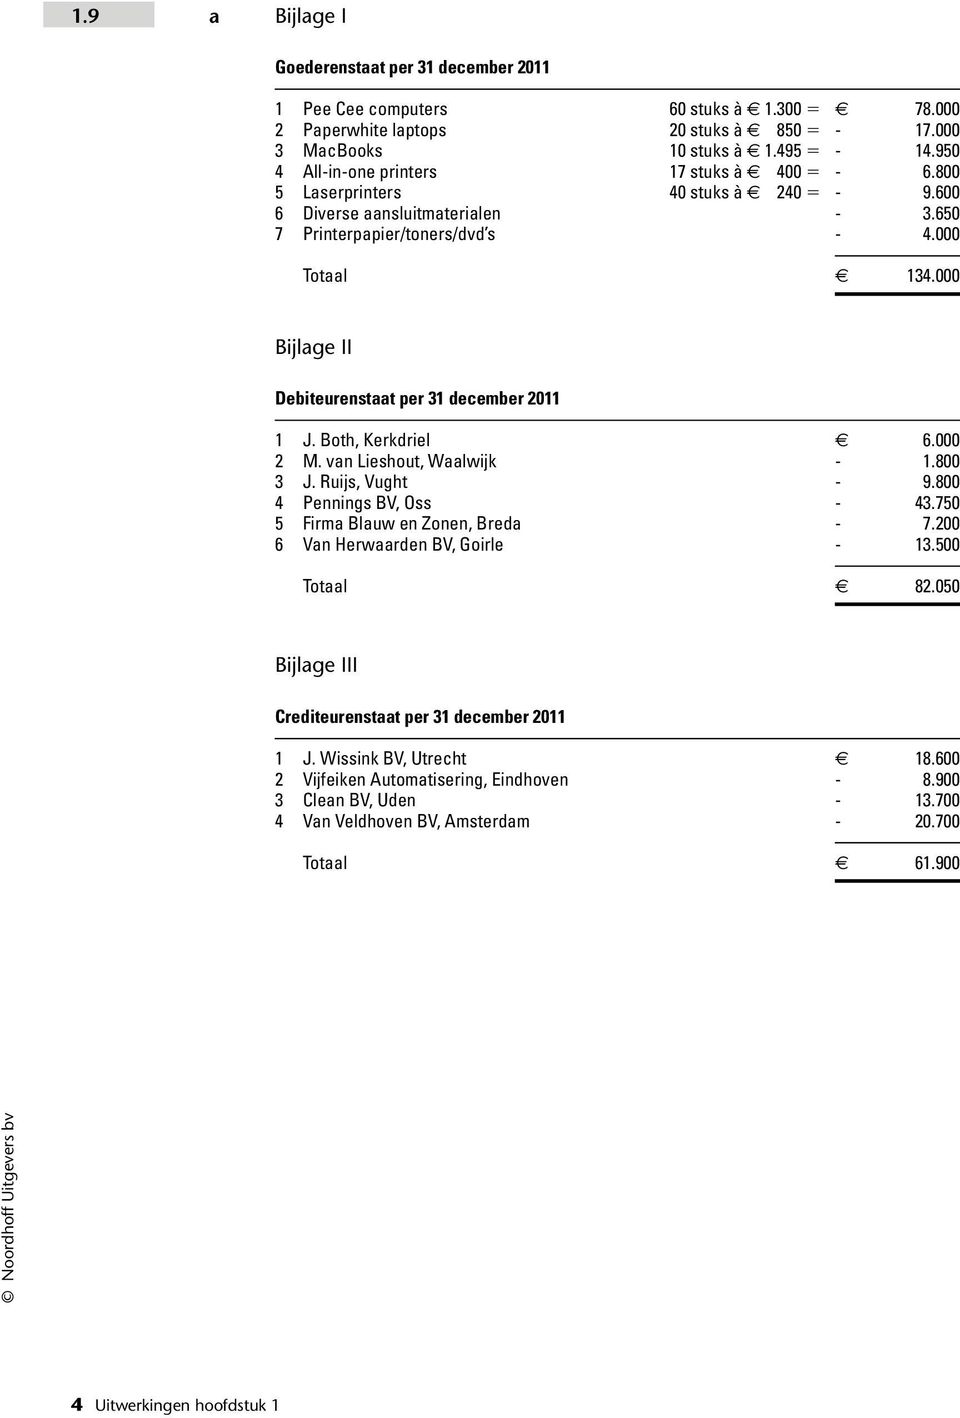 000 Bijlage II Debiteurenstaat per 31 december 2011 1 J. Both, Kerkdriel 6.000 2 M. van Lieshout, Waalwijk - 1.800 3 J. Ruijs, Vught - 9.800 4 Pennings BV, Oss - 43.